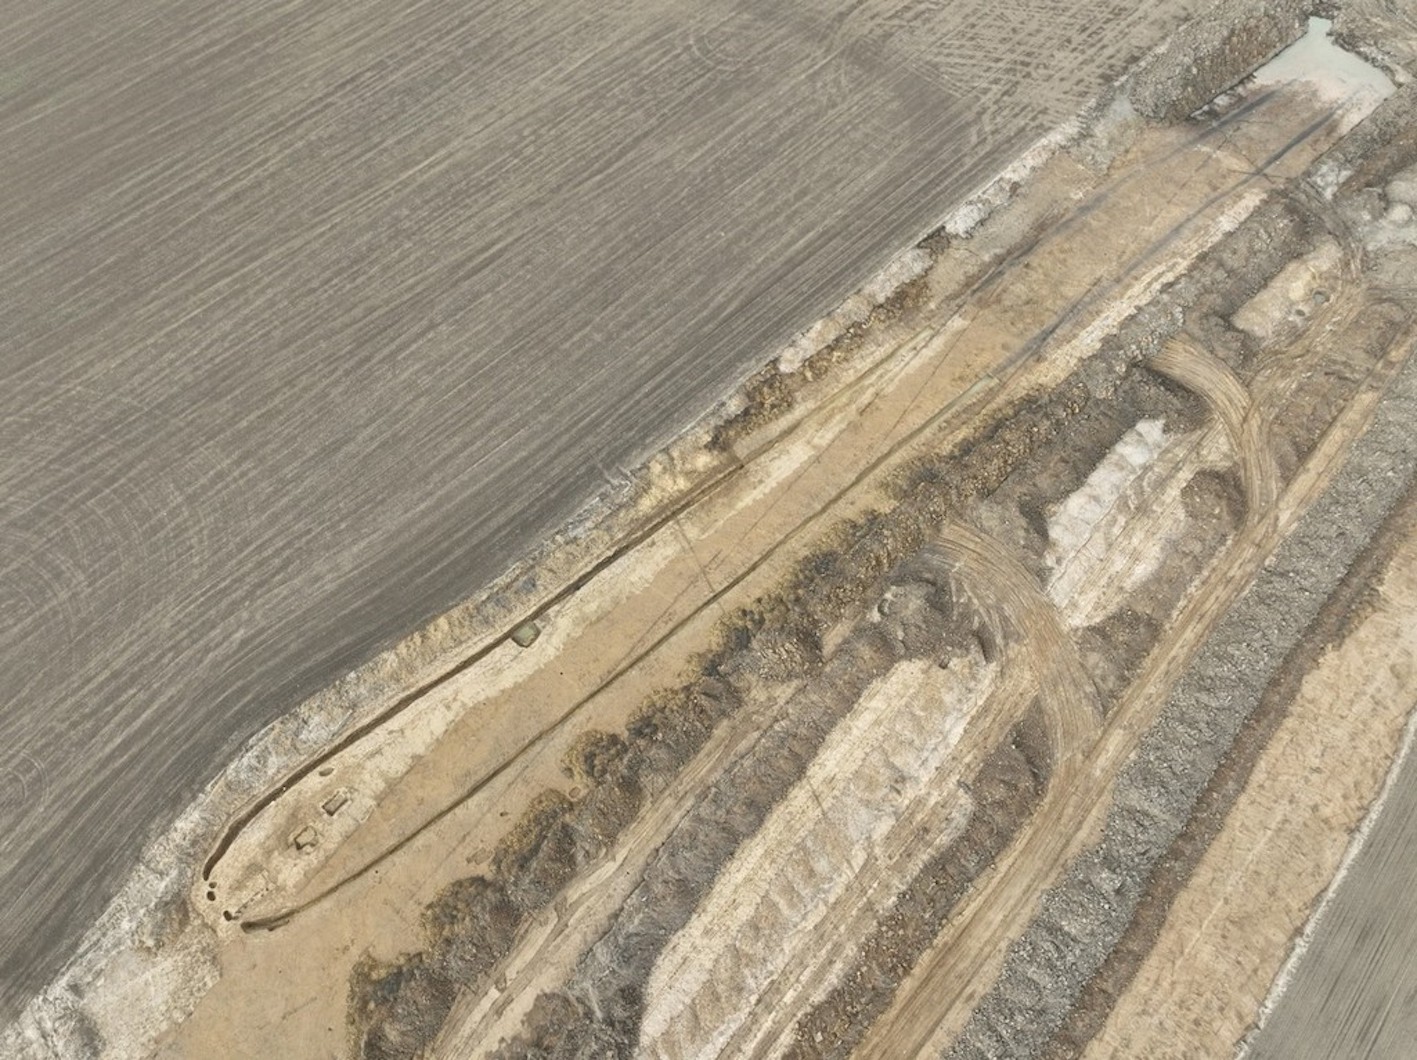 Des archéologues découvrent un monument préhistorique de 600 pieds lors de travaux de creusement d’une autoroute